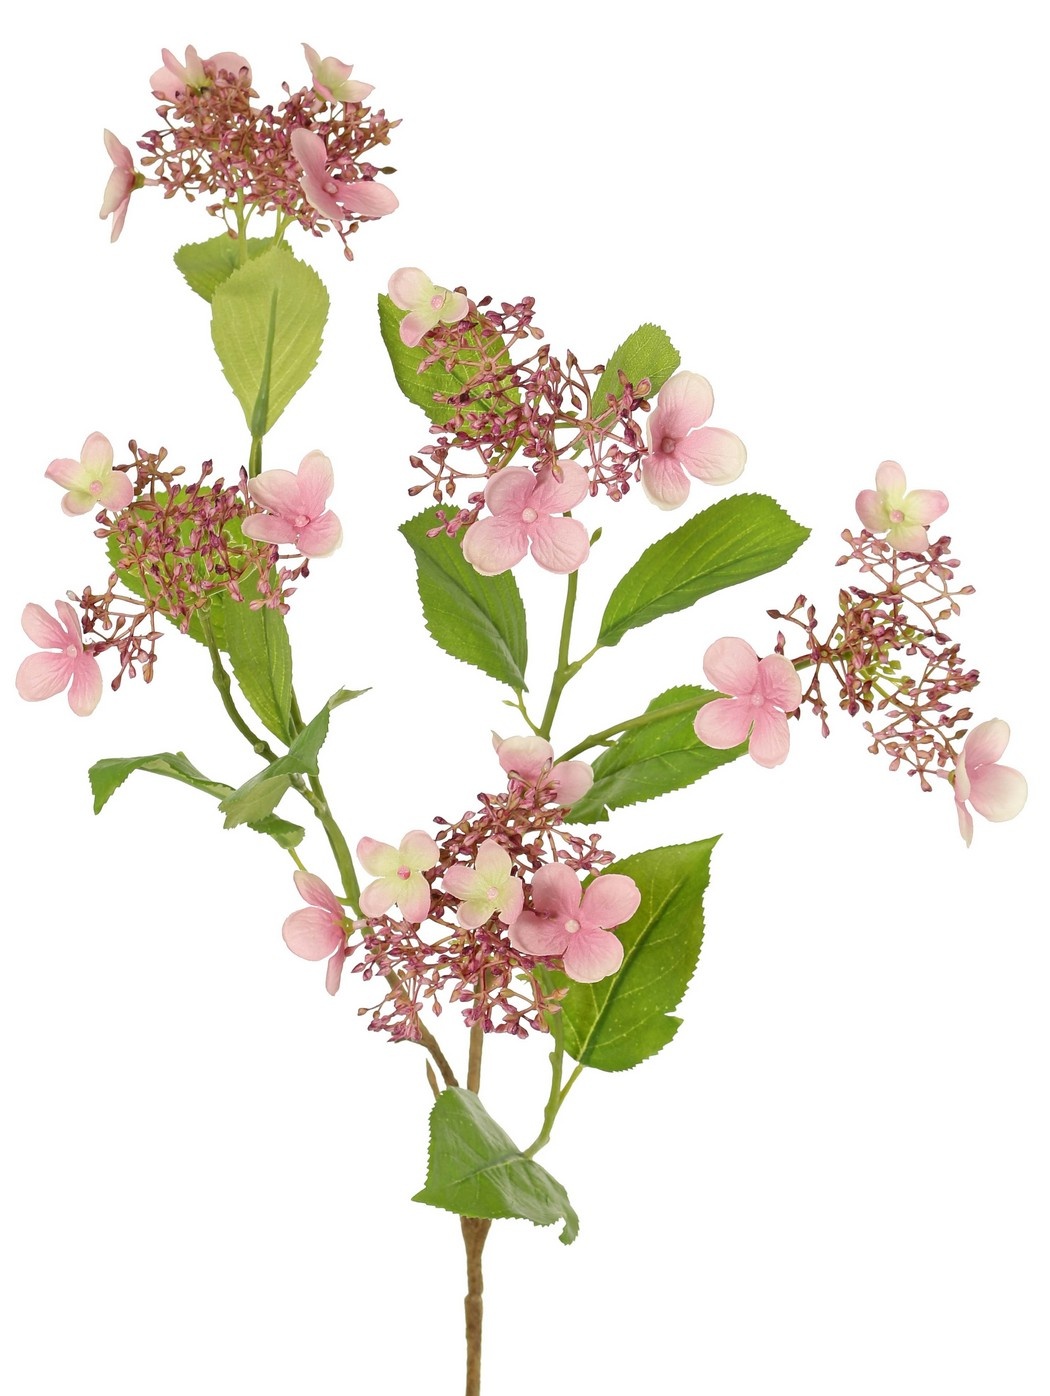 Hortensia (Hydrangea) 'Garden Joy' de 3 ramas, con 5 capullos y racimos de flores, 13 hojas, 78 cm